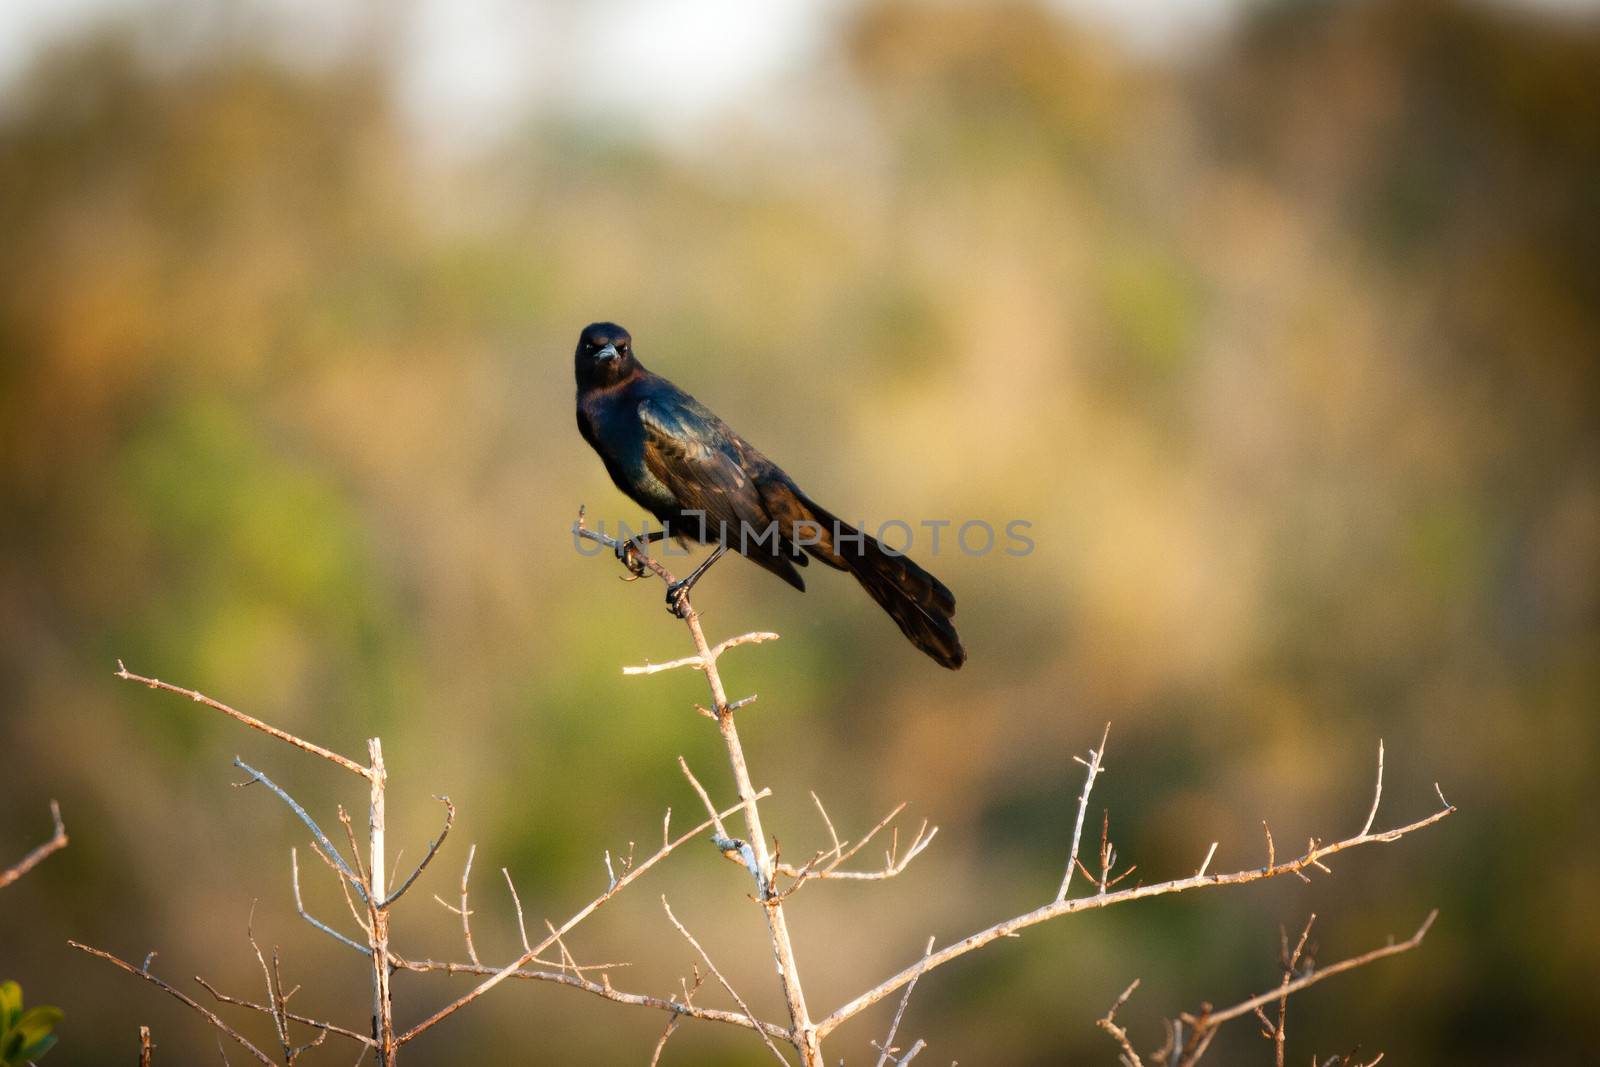 Blackbird on twig by CelsoDiniz